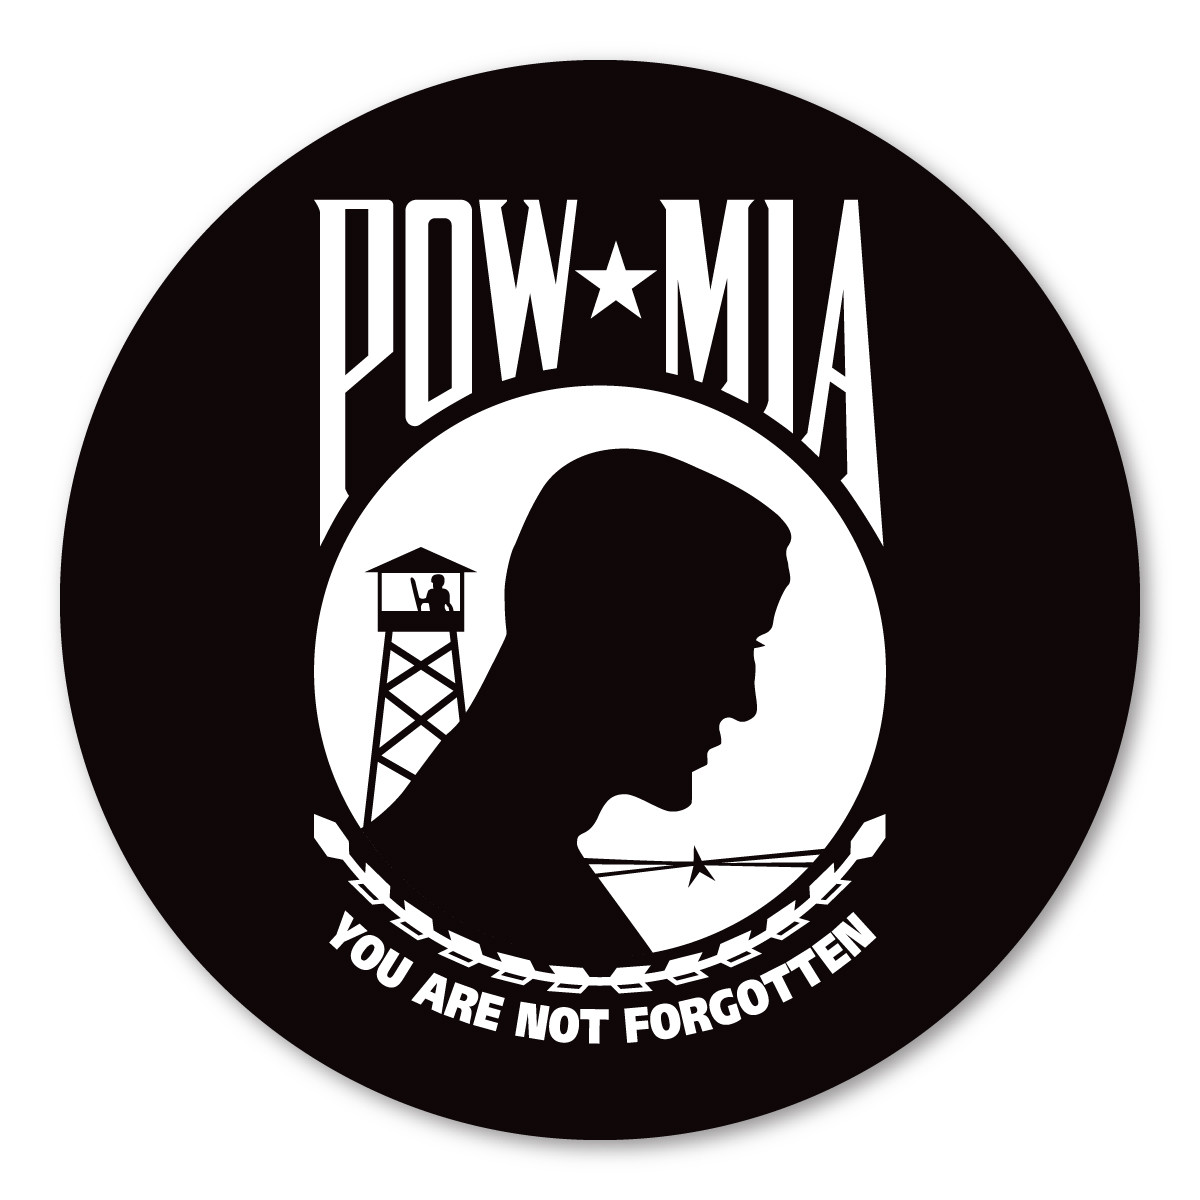 Wholesale lot 3 22"x22" PowMIA Pow Mia Pow-Mia Prisoner Forgotten Bandana 